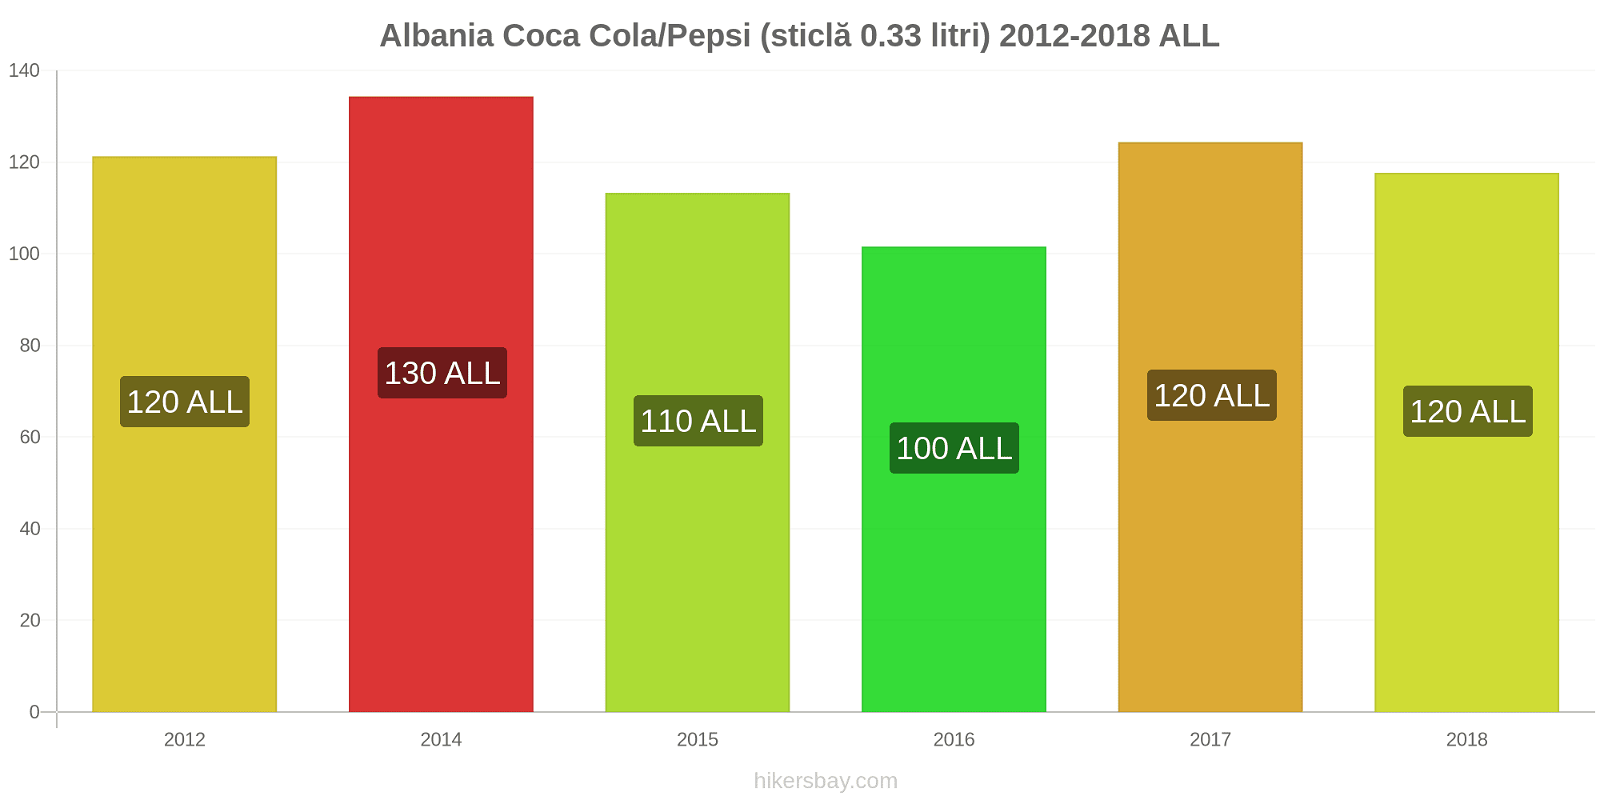 Albania schimbări de prețuri Coca-Cola/Pepsi (sticlă de 0.33 litri) hikersbay.com